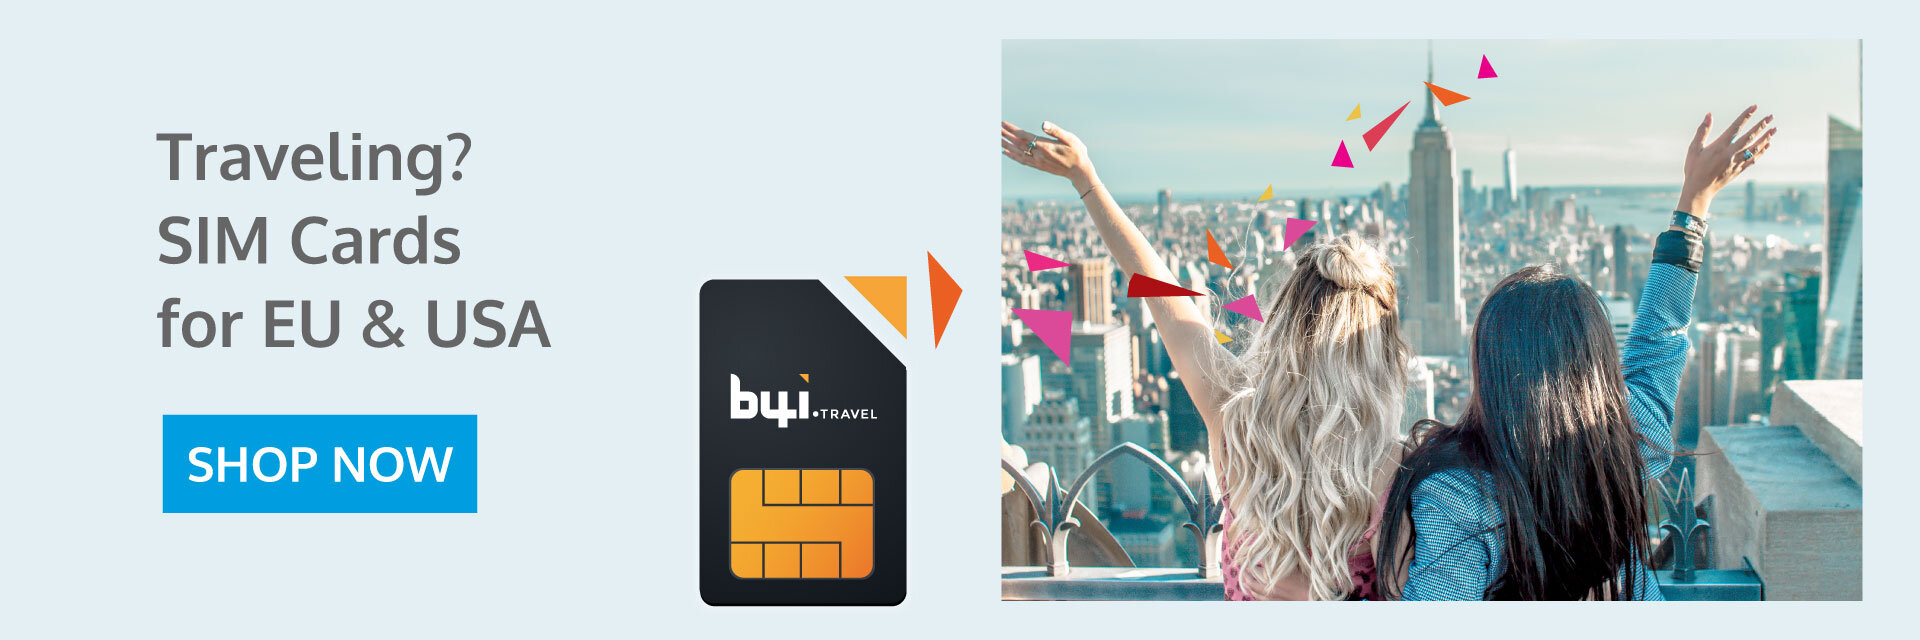 b4i.travel - SIM CARD Banner